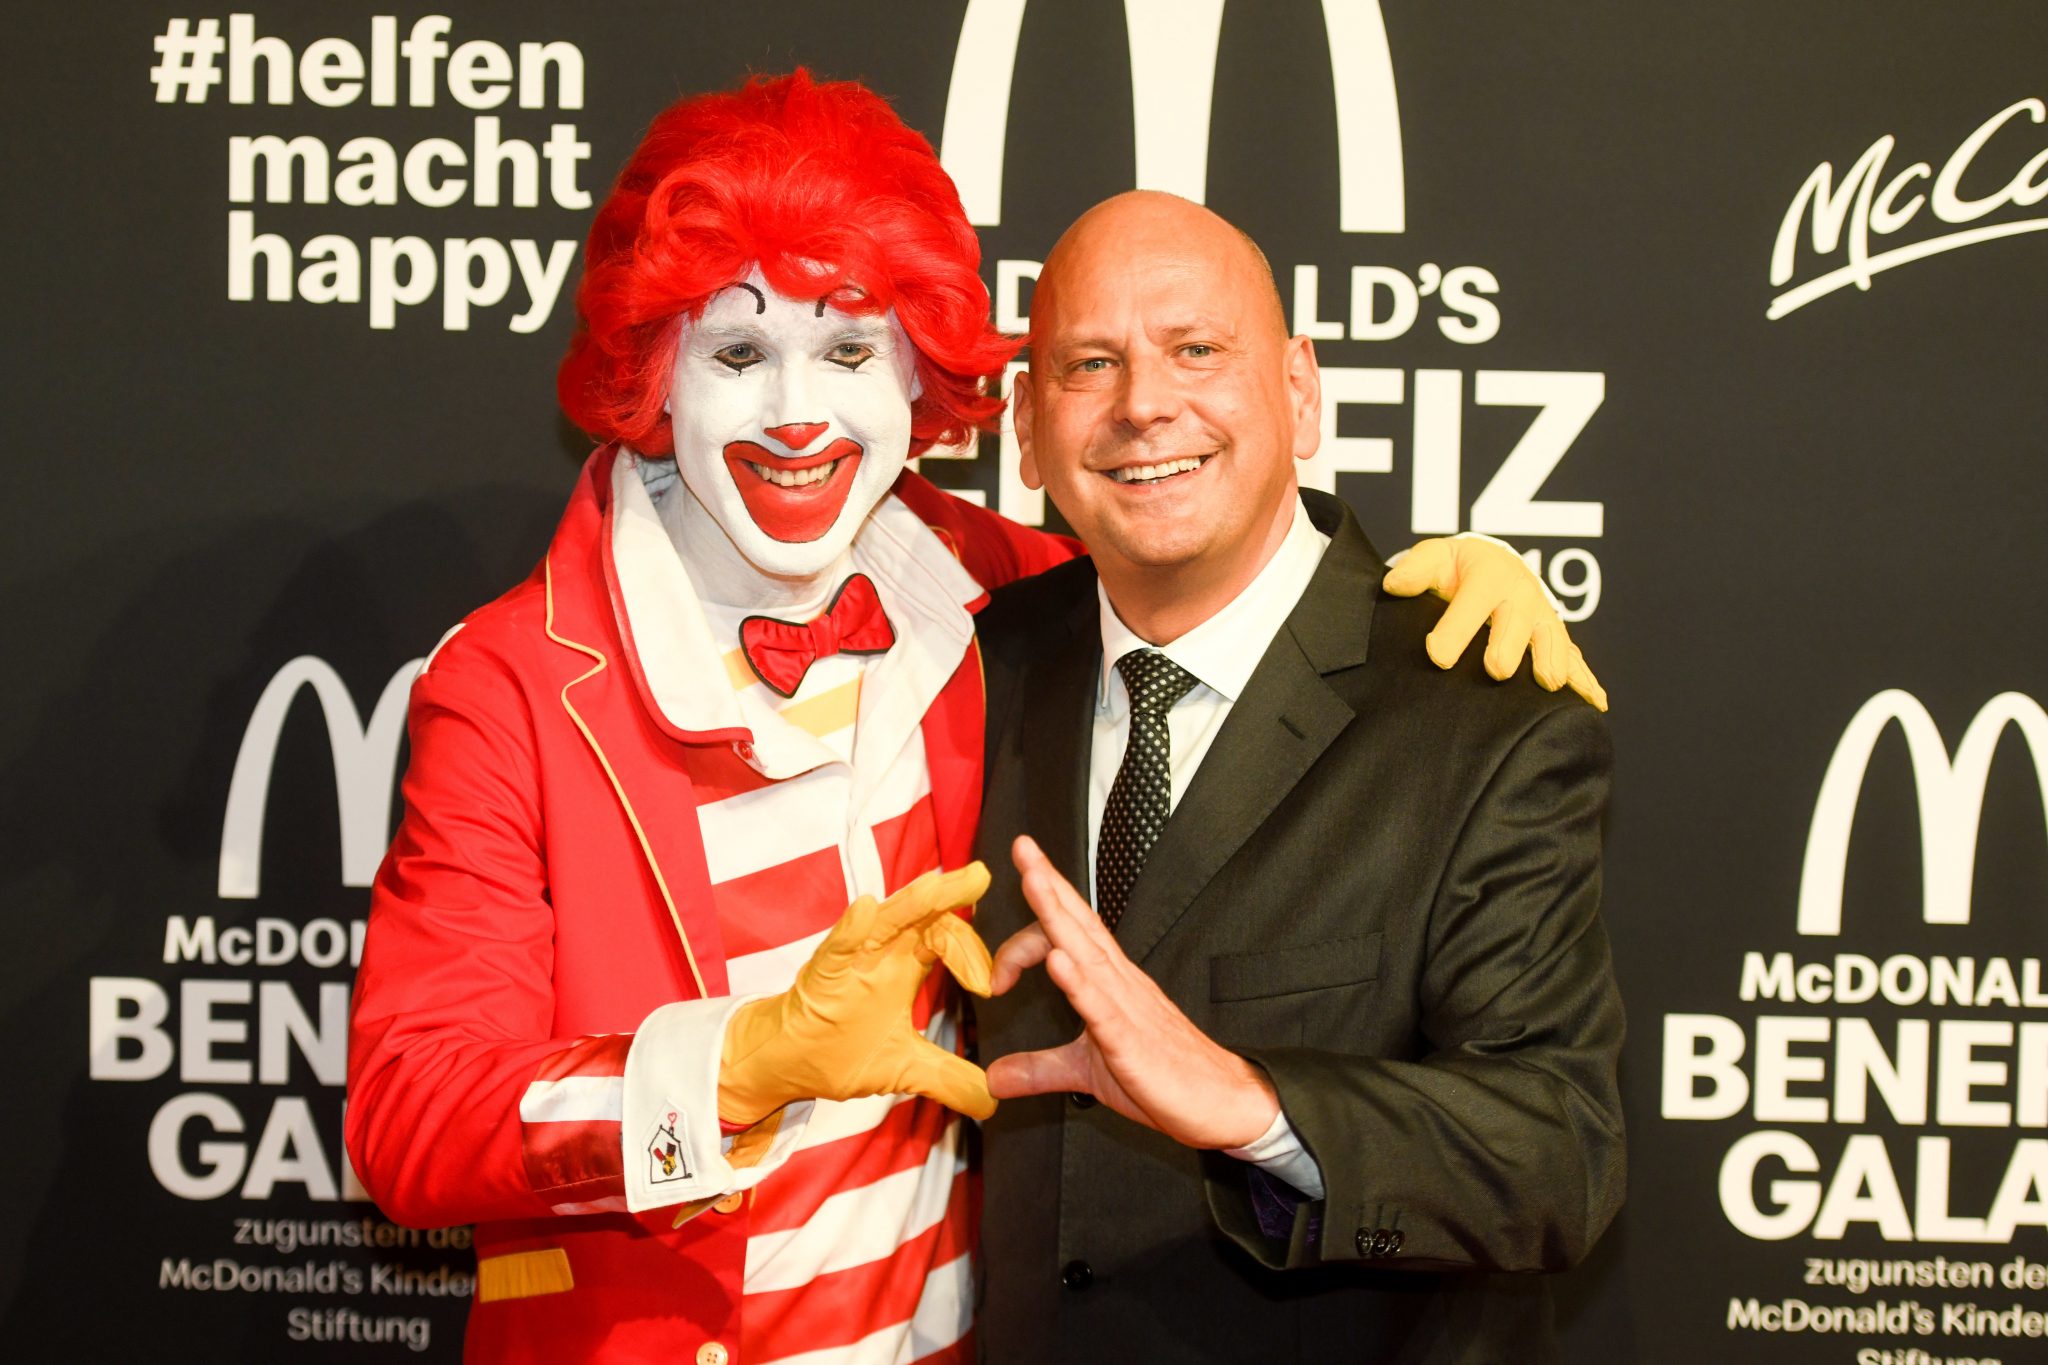 Benefiz-Gala für die McDonald's Kinderhilfe Stiftung